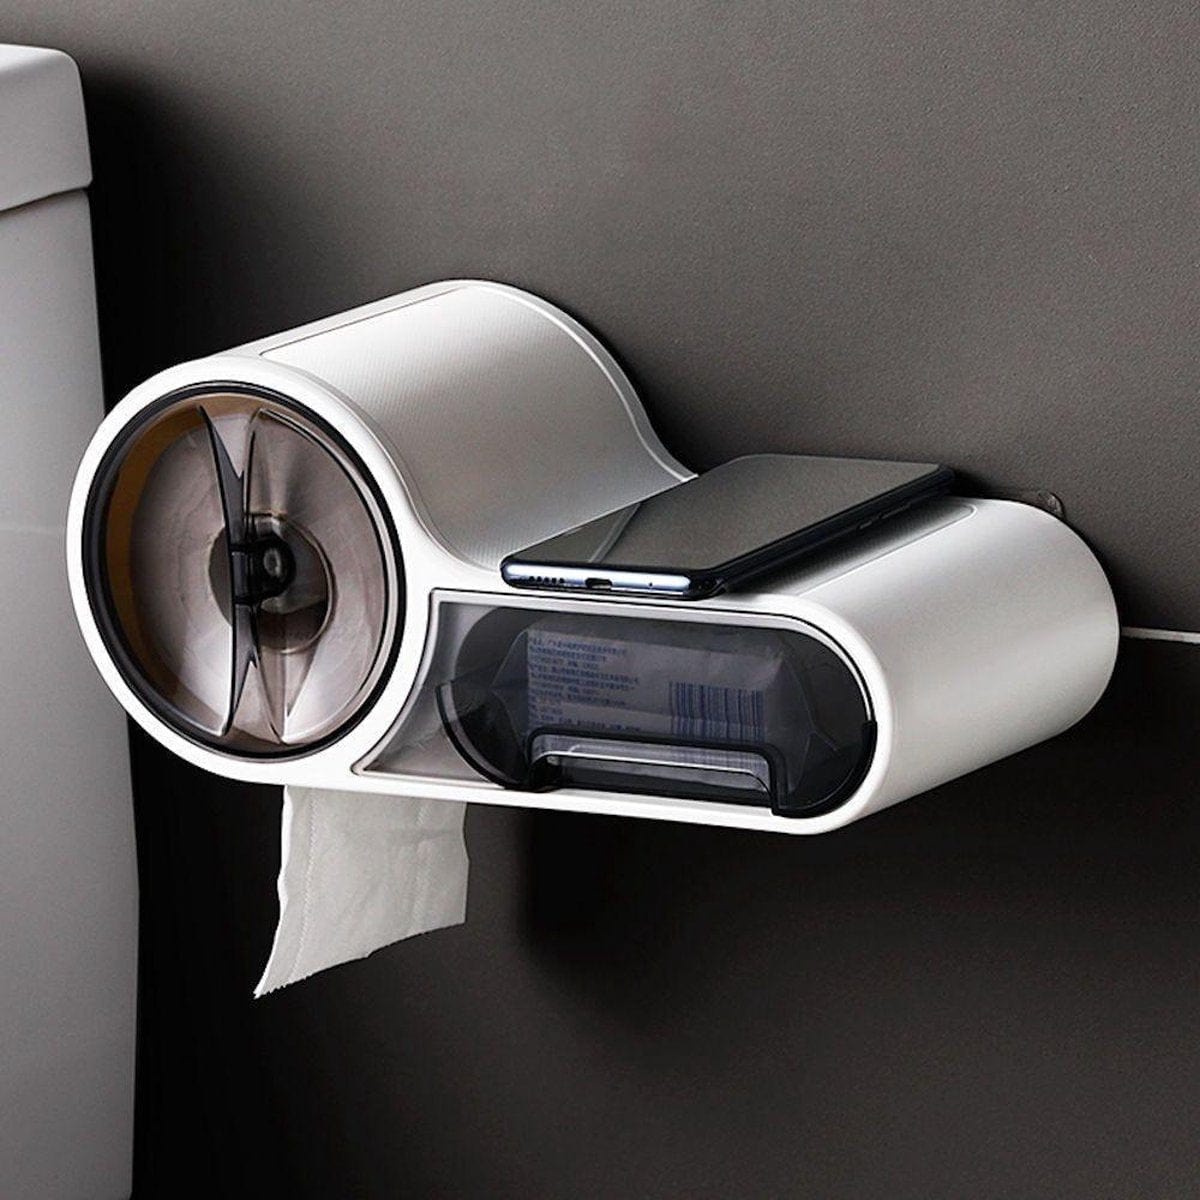 Multifunctional toilet paper dispenser